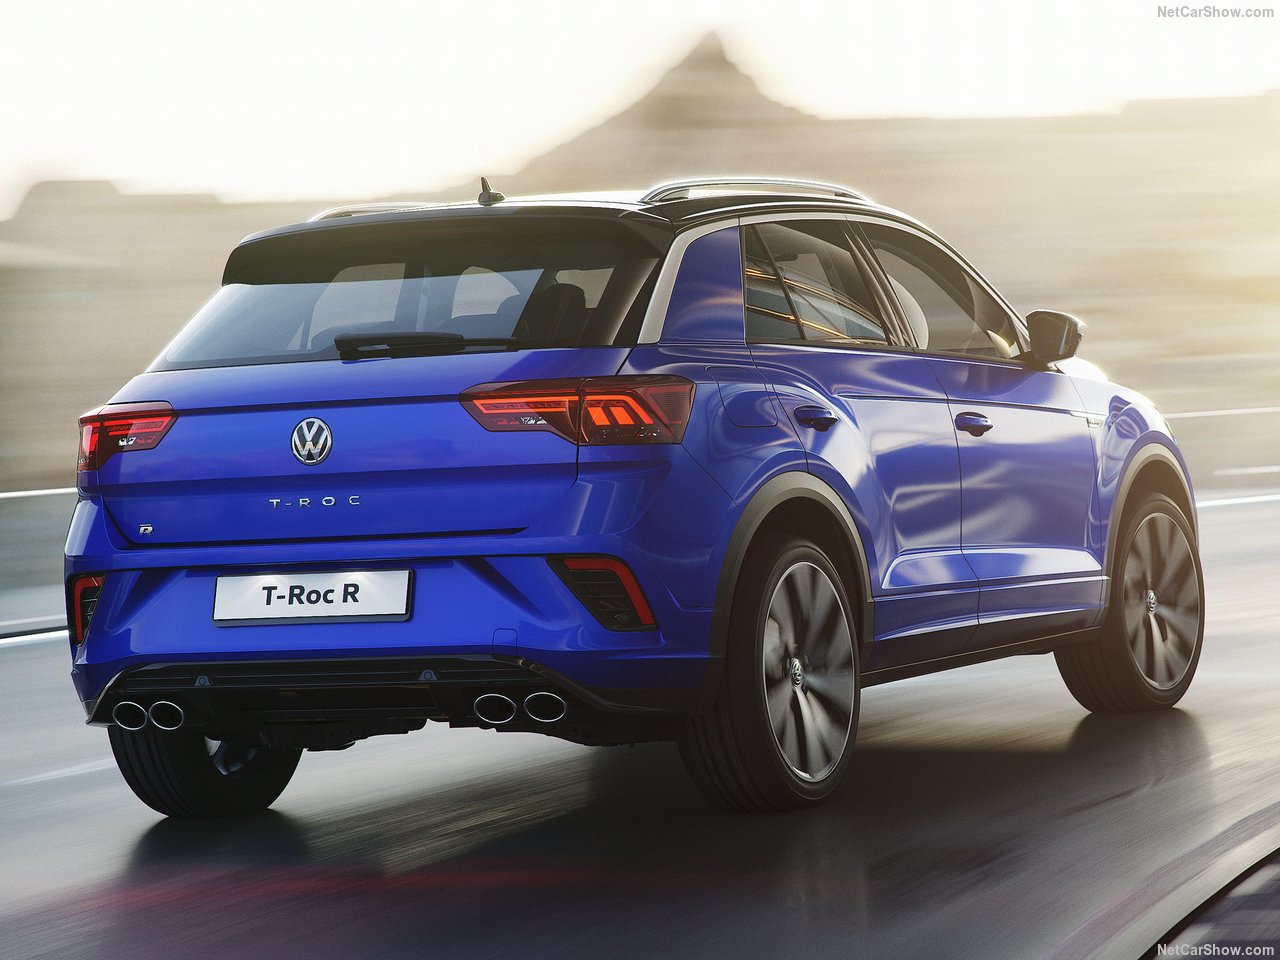 Volkswagen T-Roc R ortaya çıktı! 2019 Volkswagen T-Roc R’nin özellikleri neler?